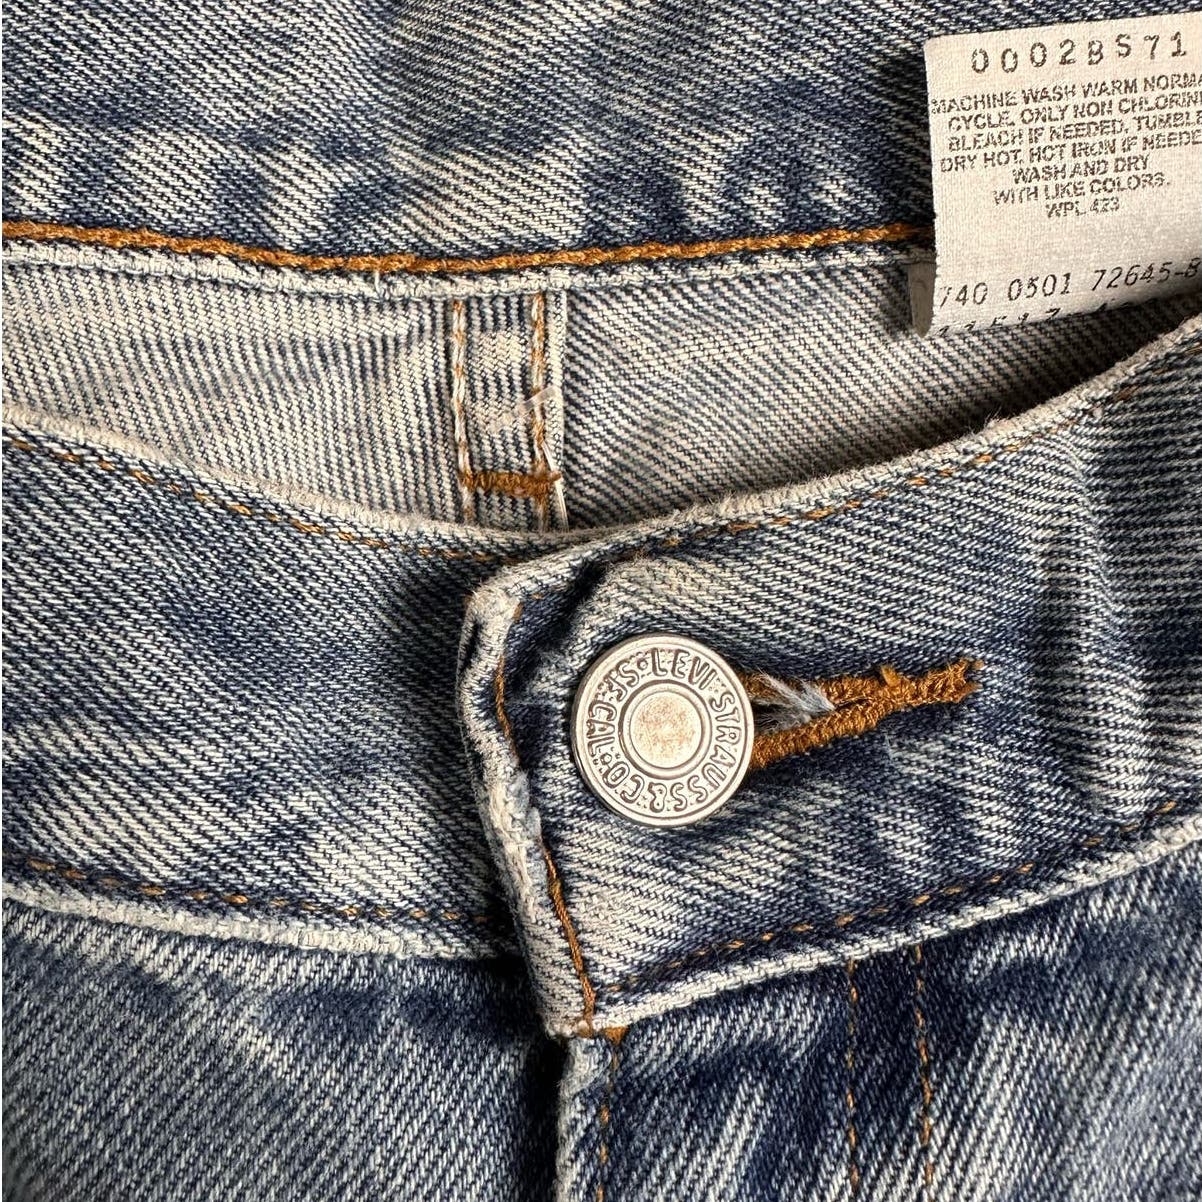 Vintage Levis 517 Bootcut Denim Jeans Low Rise 13Jr Slim Fit